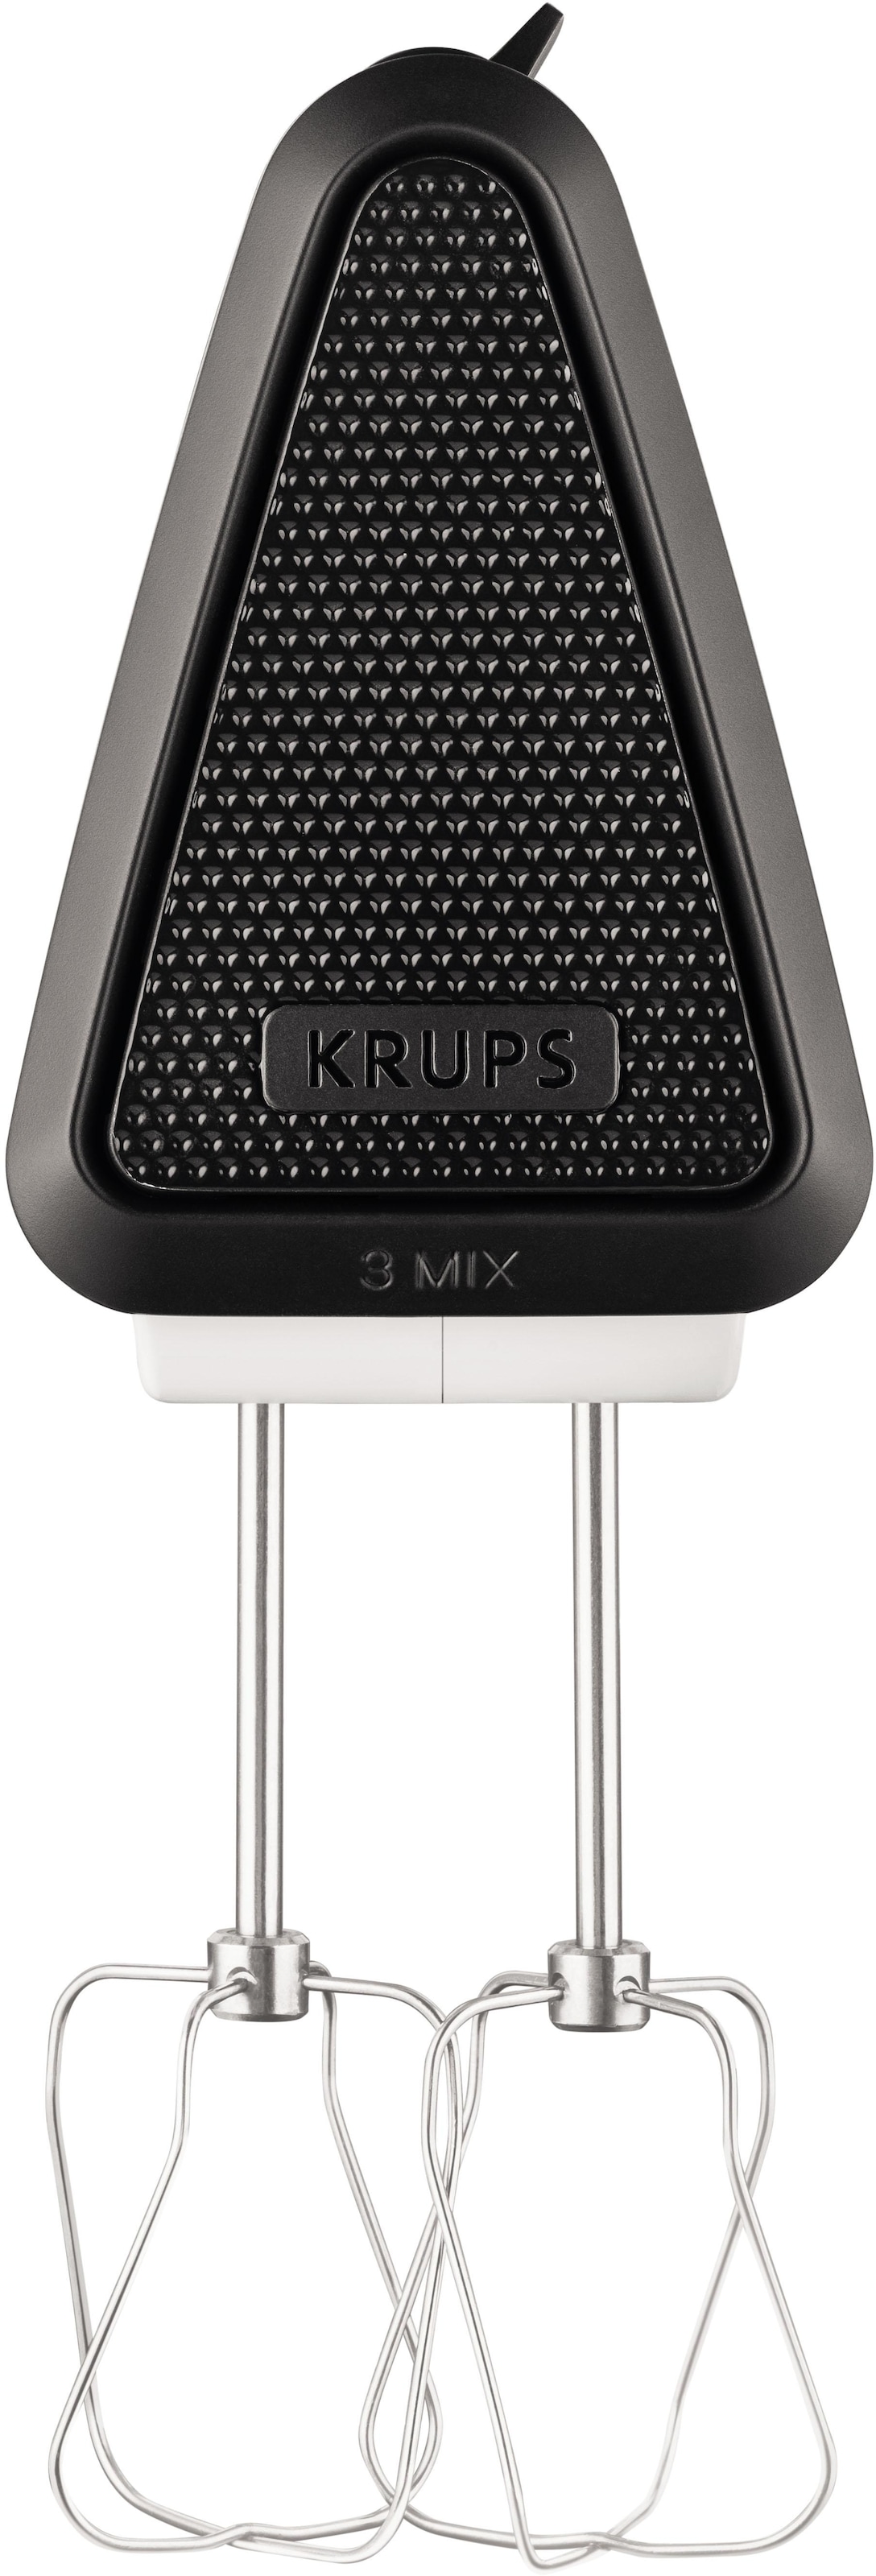 Krups Handmixer »GN5021 3 Mix«, 500 W, 5 Geschwindigkeiten, inkl. Rührbesen  und Knethaken aus Edelstahl jetzt kaufen bei OTTO | Handmixer